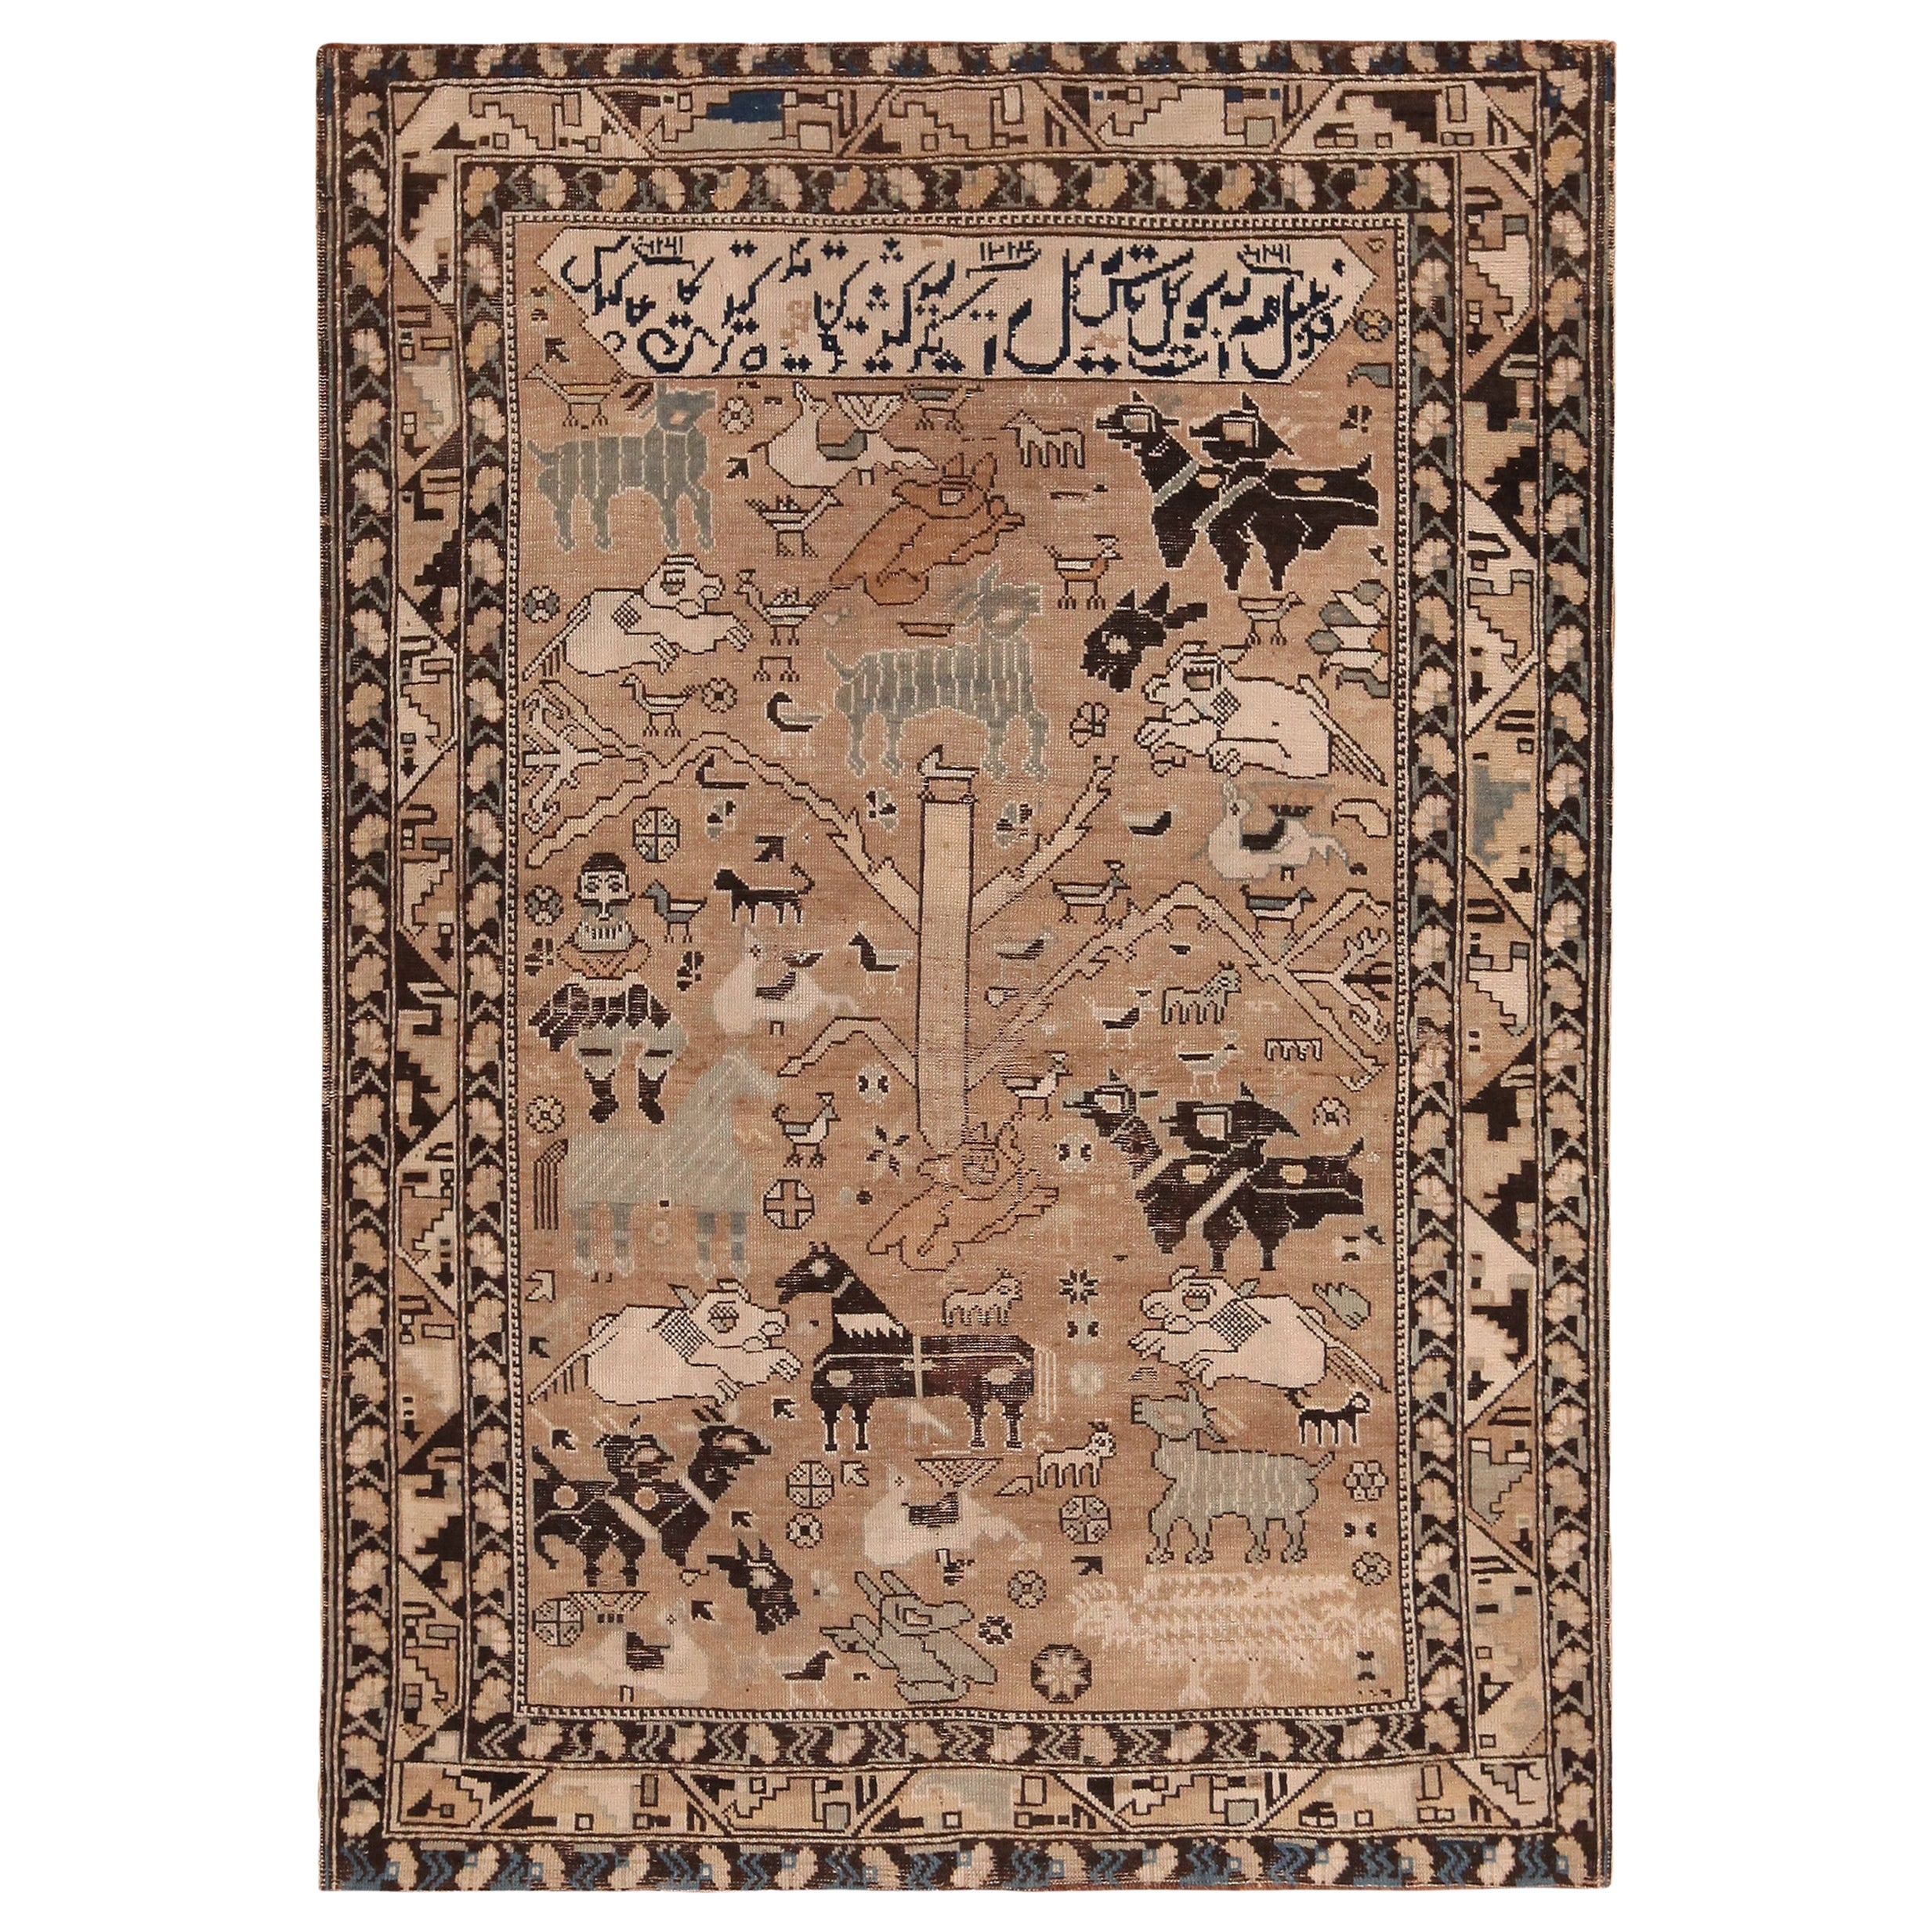 Tapis Shirvan caucasien ancien de collection daté de 1214 (1800) 3'10" x 5'4" en vente